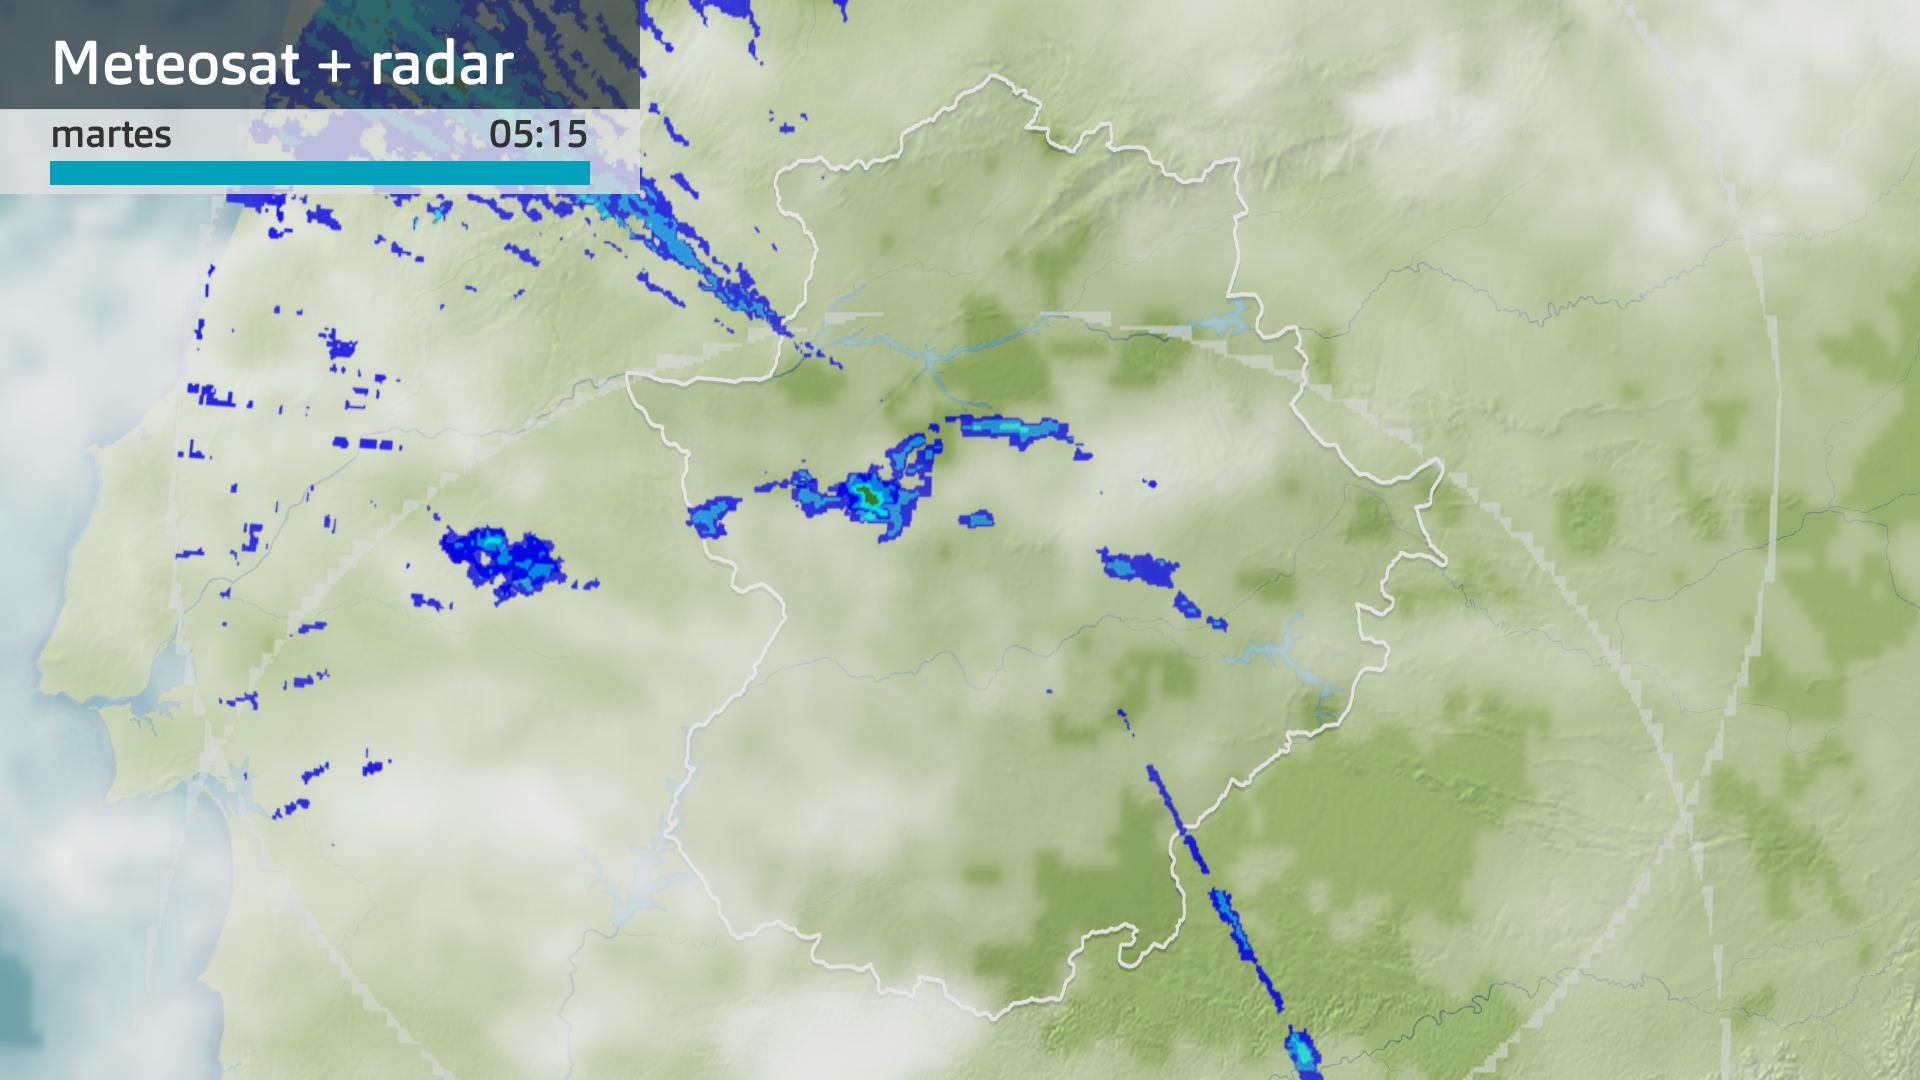 Imagen del Meteosat + radar meteorológico martes 28 de noviembre 5:15 h.